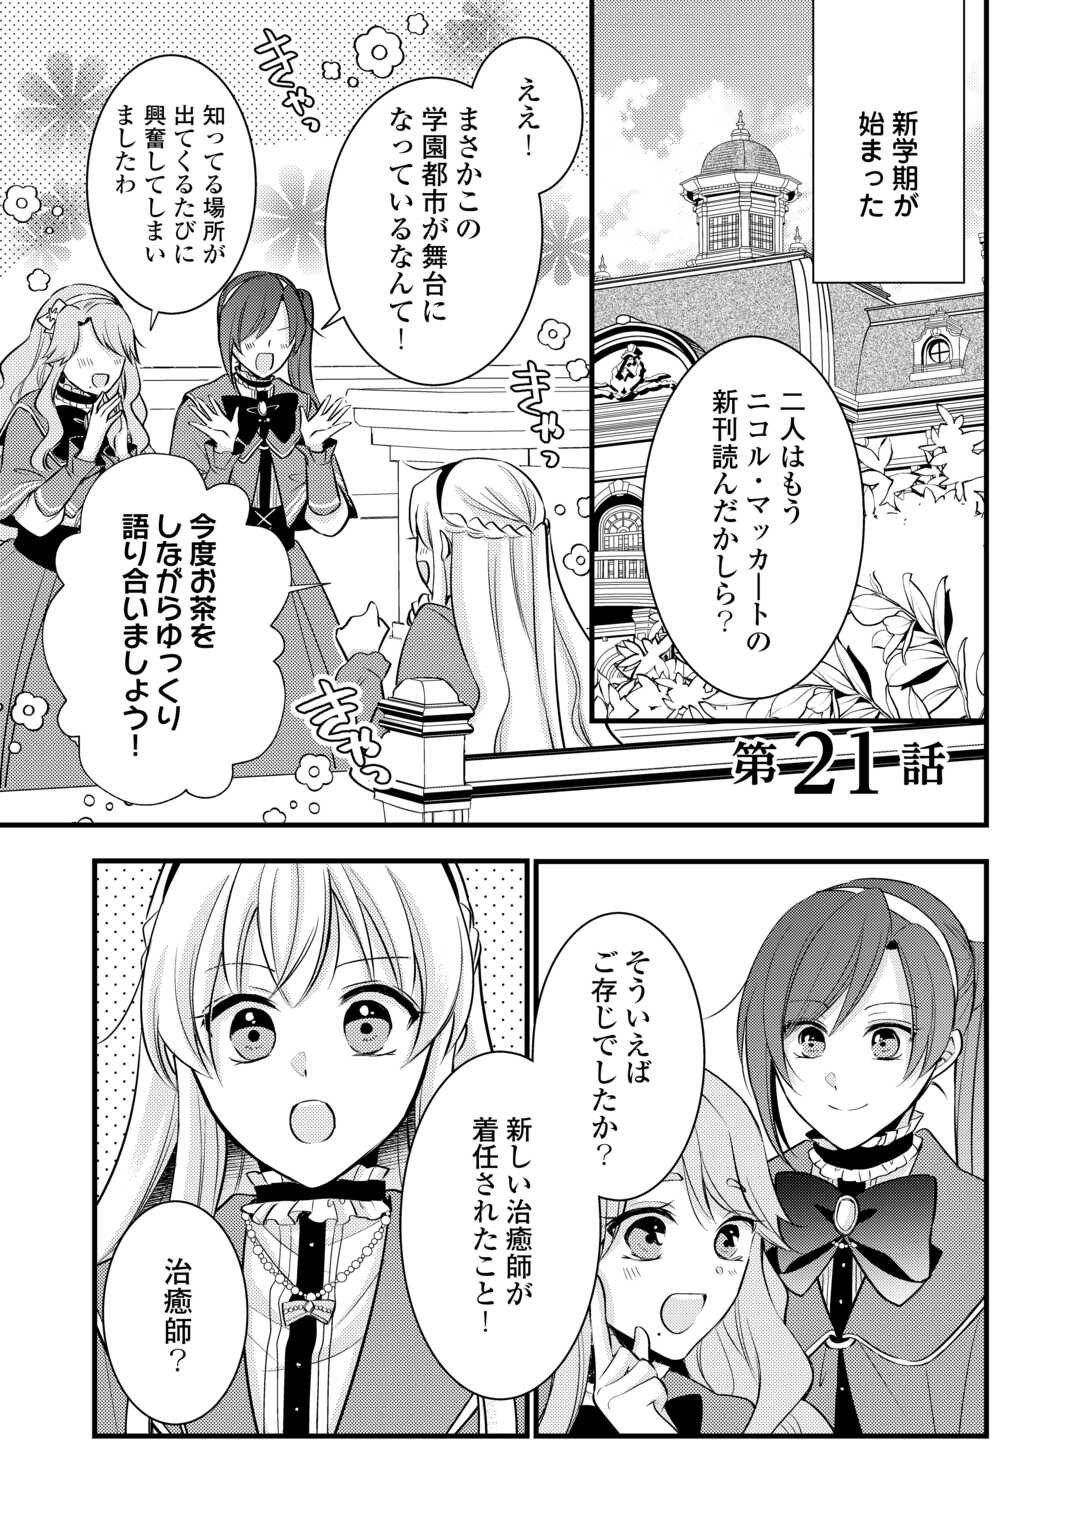 Akuyaku Reijou wa Heroine wo Ijimeteiru Baai de wa Nai - Chapter 21 - Page 1